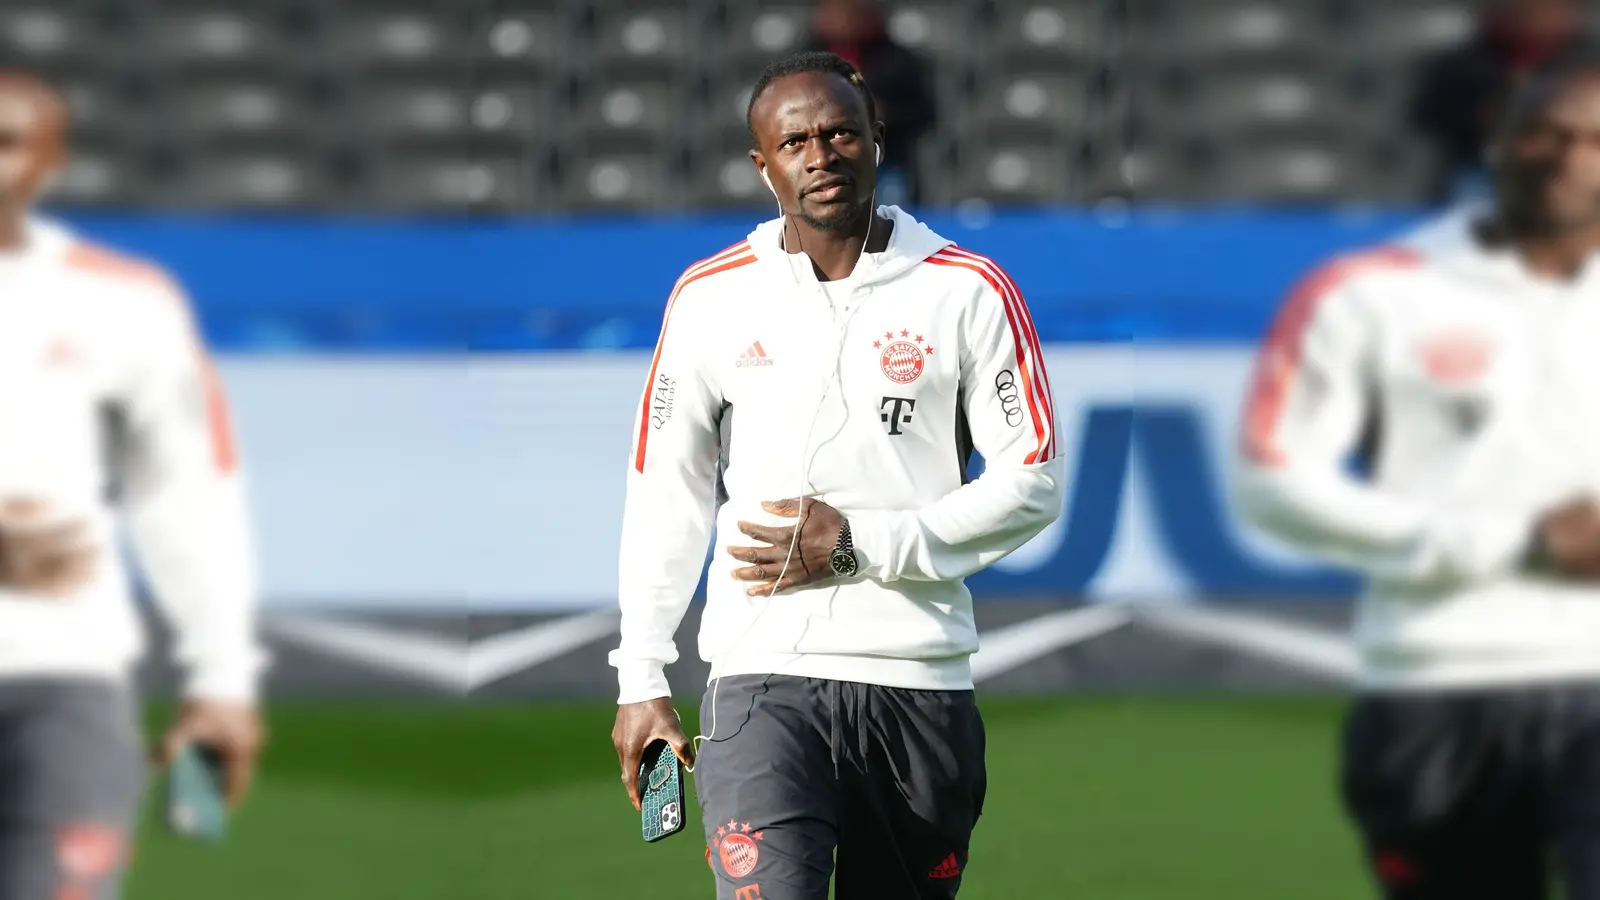 Fällt bei der WM für Senegal aus: Bayern-Star Sadio Mané. (Foto: Soeren Stache/dpa)